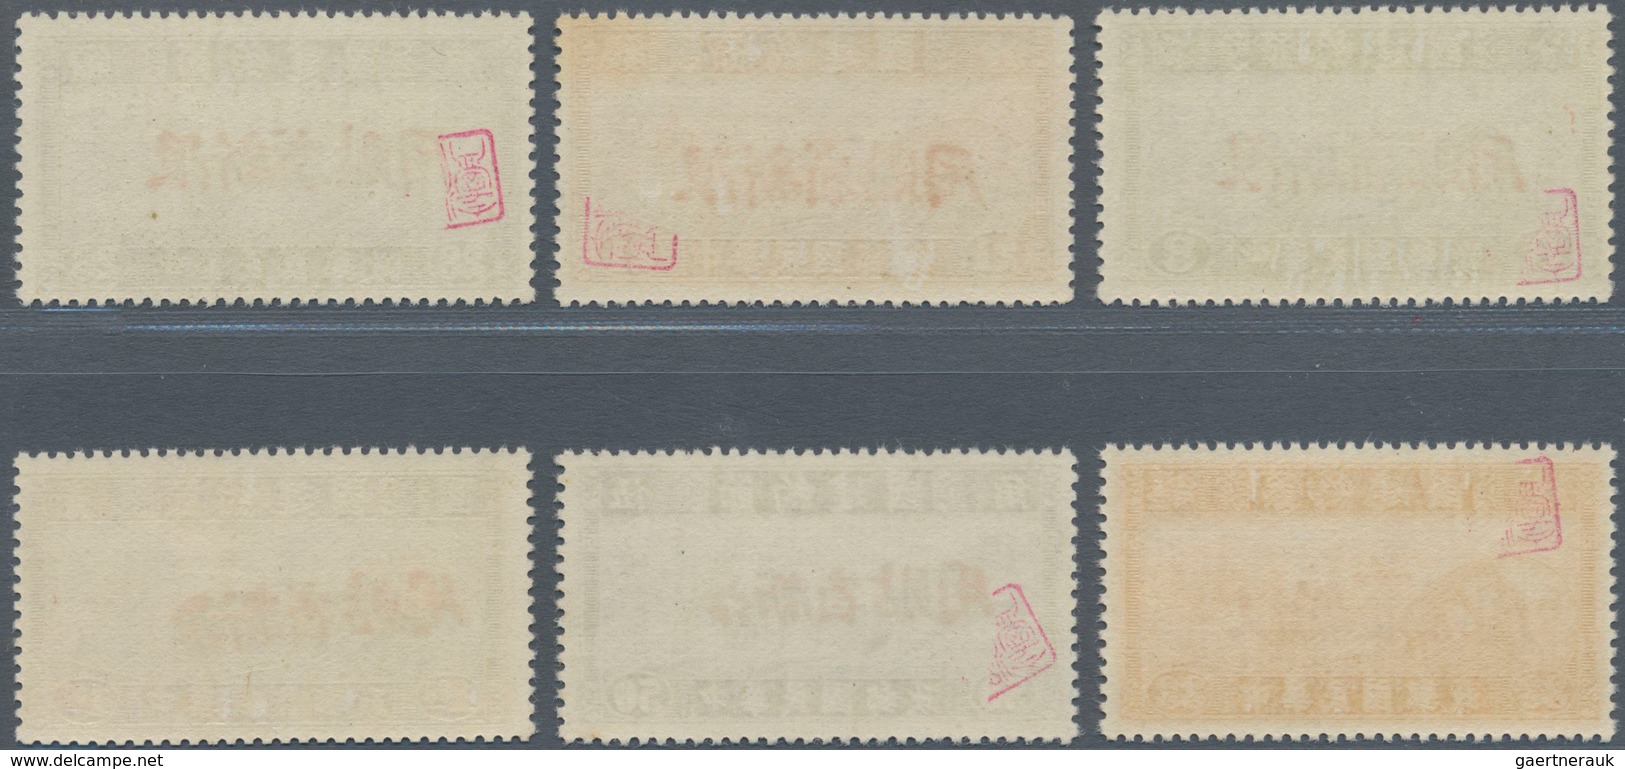 China - Provinzausgaben - Sinkiang (1915/45): 1942/44, Thrift Movement Semipostals, Cpl. Sets With R - Sinkiang 1915-49